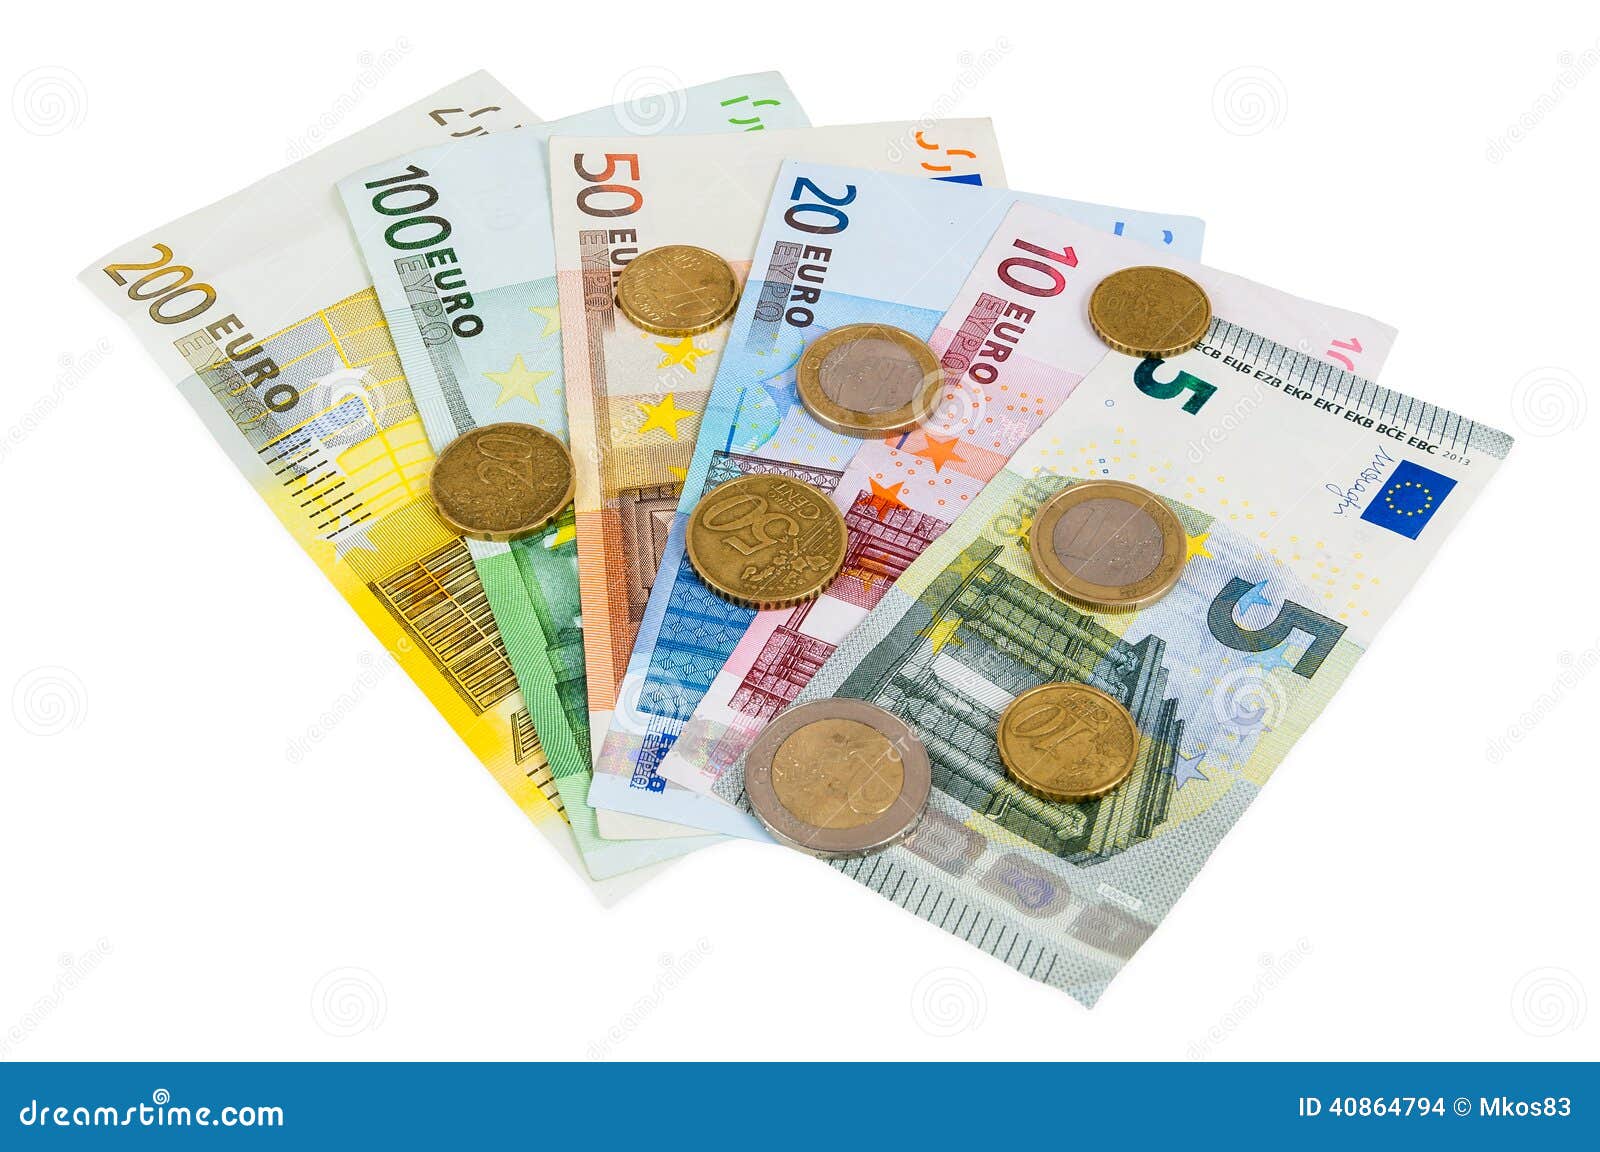 Ensemble D'euro Billets De Banque Et Pièces De Monnaie Photo stock